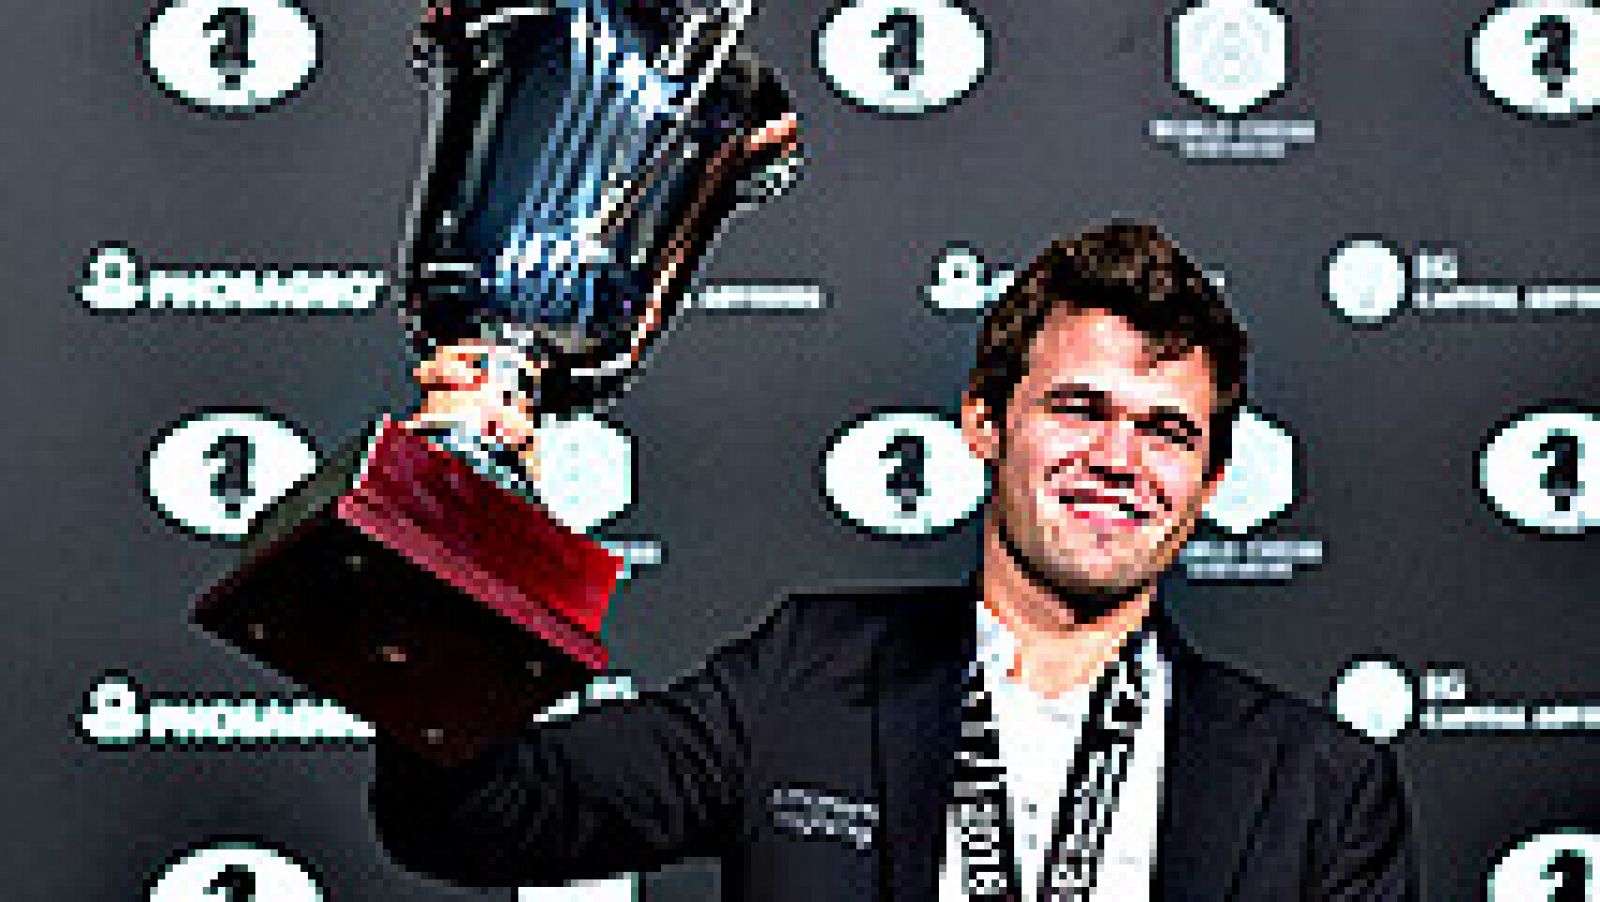 El noruego Magnus Carlsen revalidó el título mundial al vencer  este miércoles en el desempate al ruso Serguéi Karjakin en la final  celebrada en Nueva York, reeditando así las victorias de 2013 y 2014  tras un apretada disputa en el tablero que se t